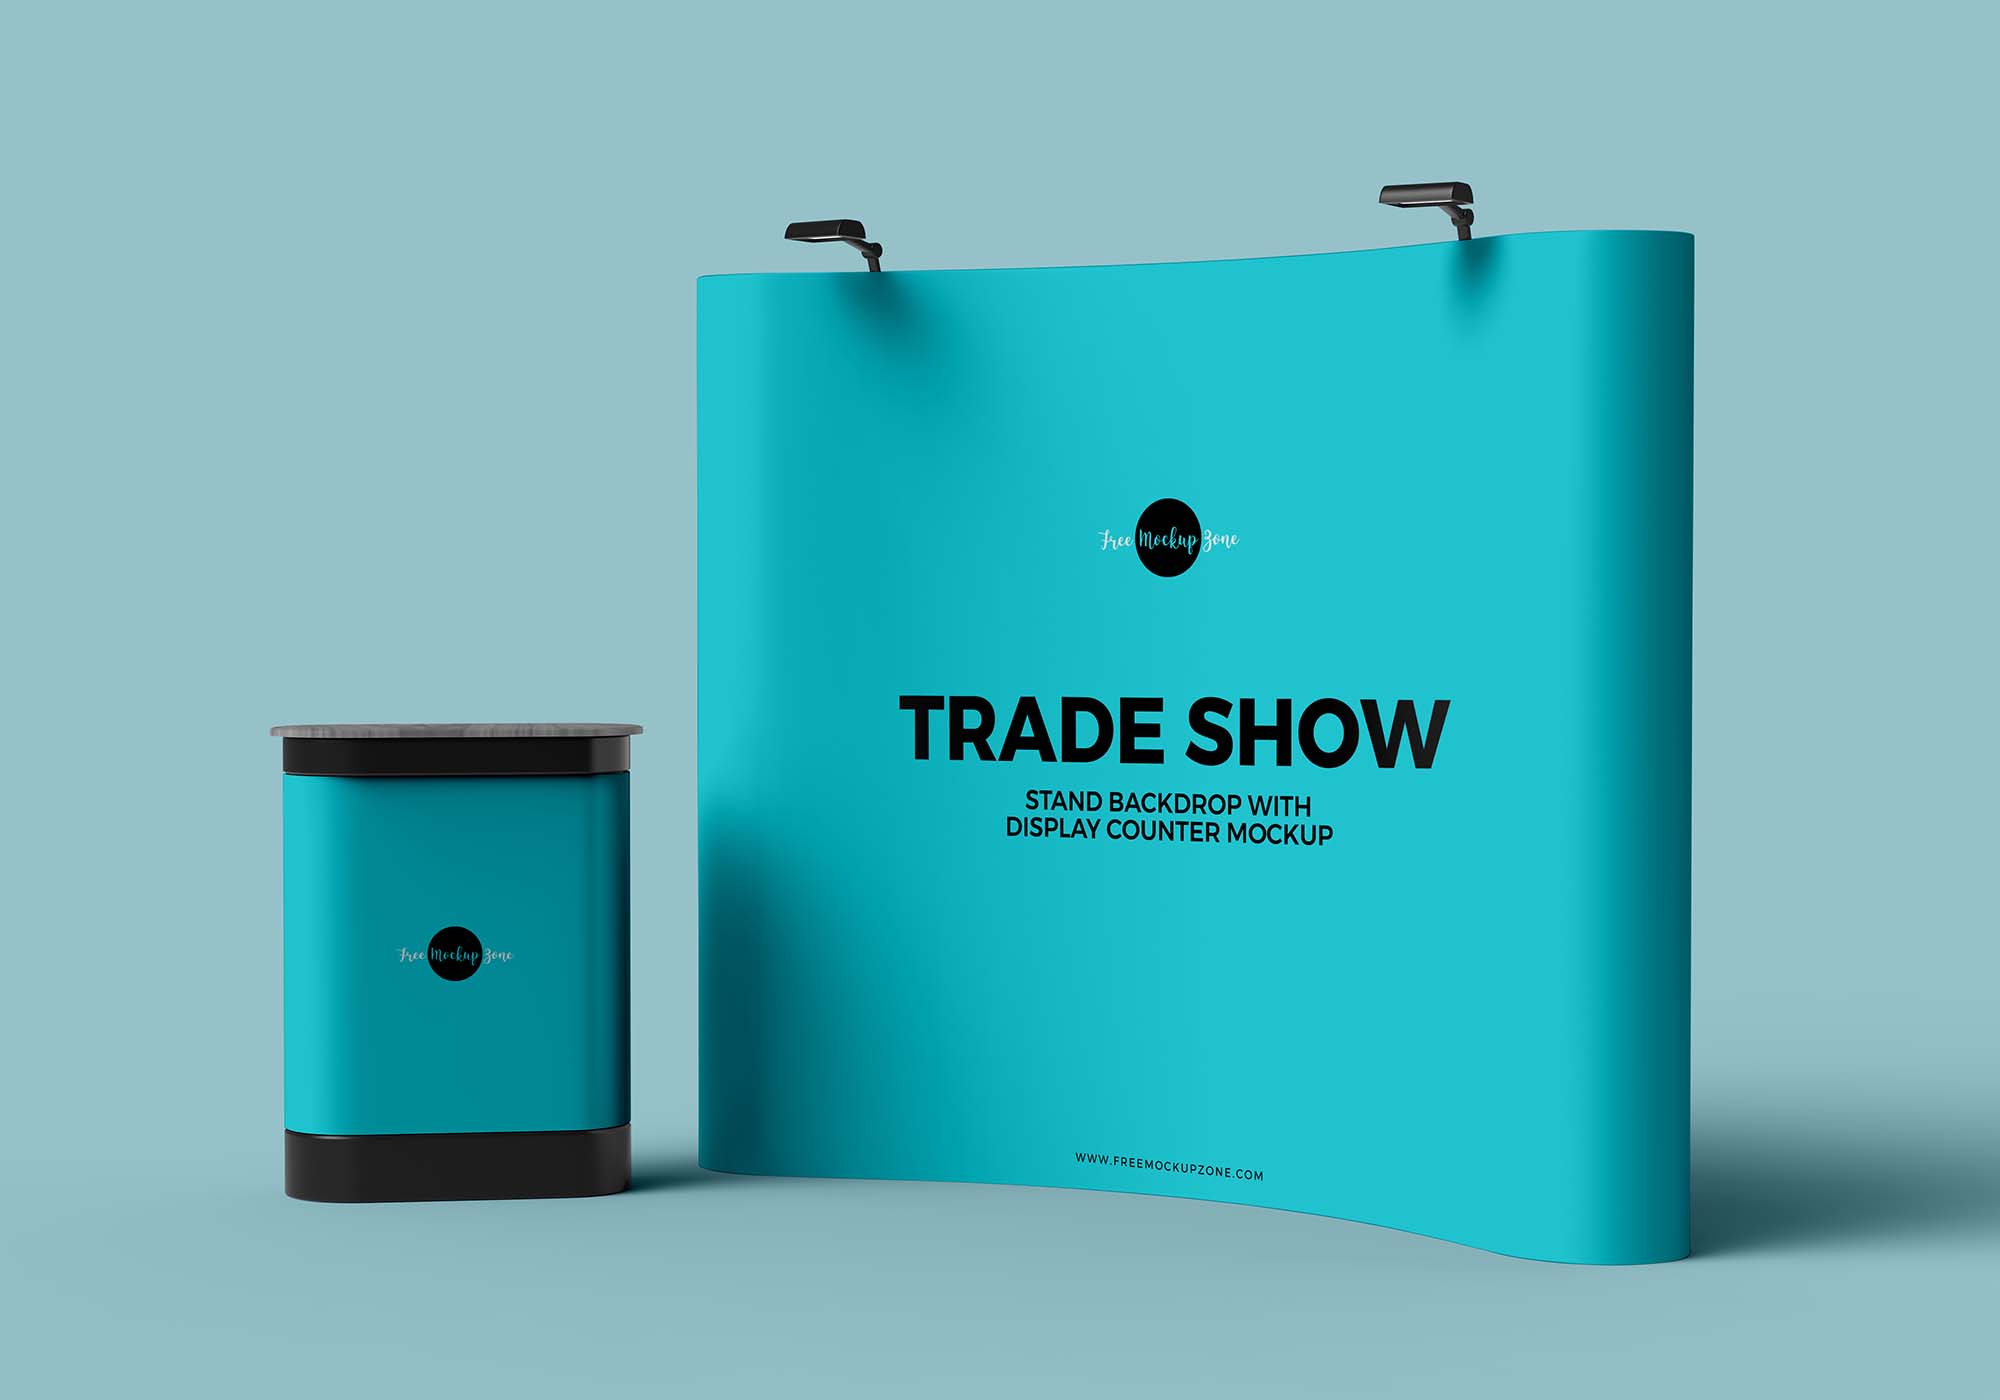 Download Trade Show Stand PSD Mockup (Free) by Angga Kuntara